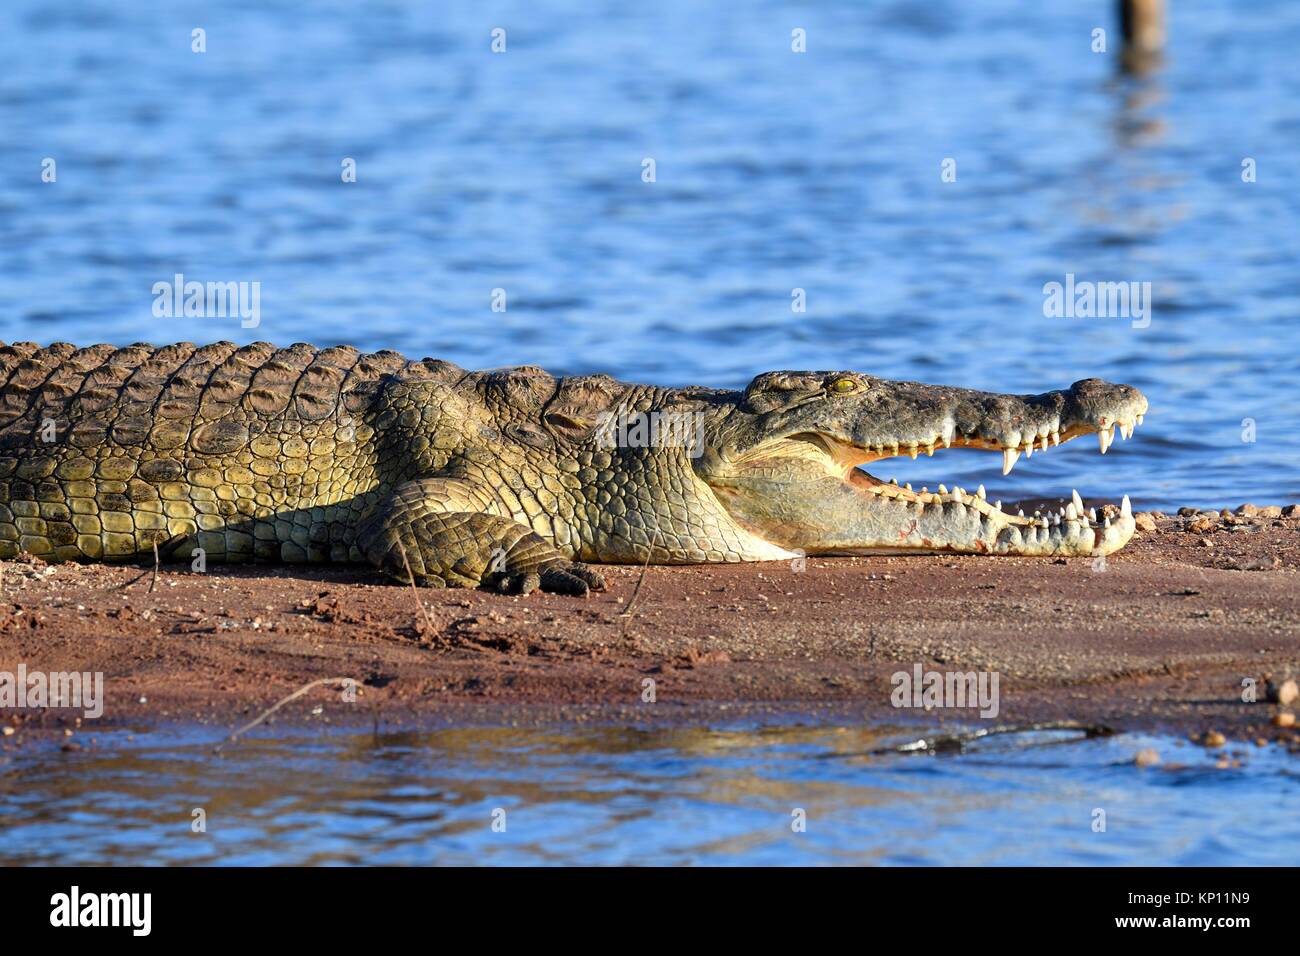 Nile crocodile (Crocodylus niloticus) resting on the banks of Lake Kariba with its jaw open. Matusadona National Park, Zimbabwe. Stock Photo